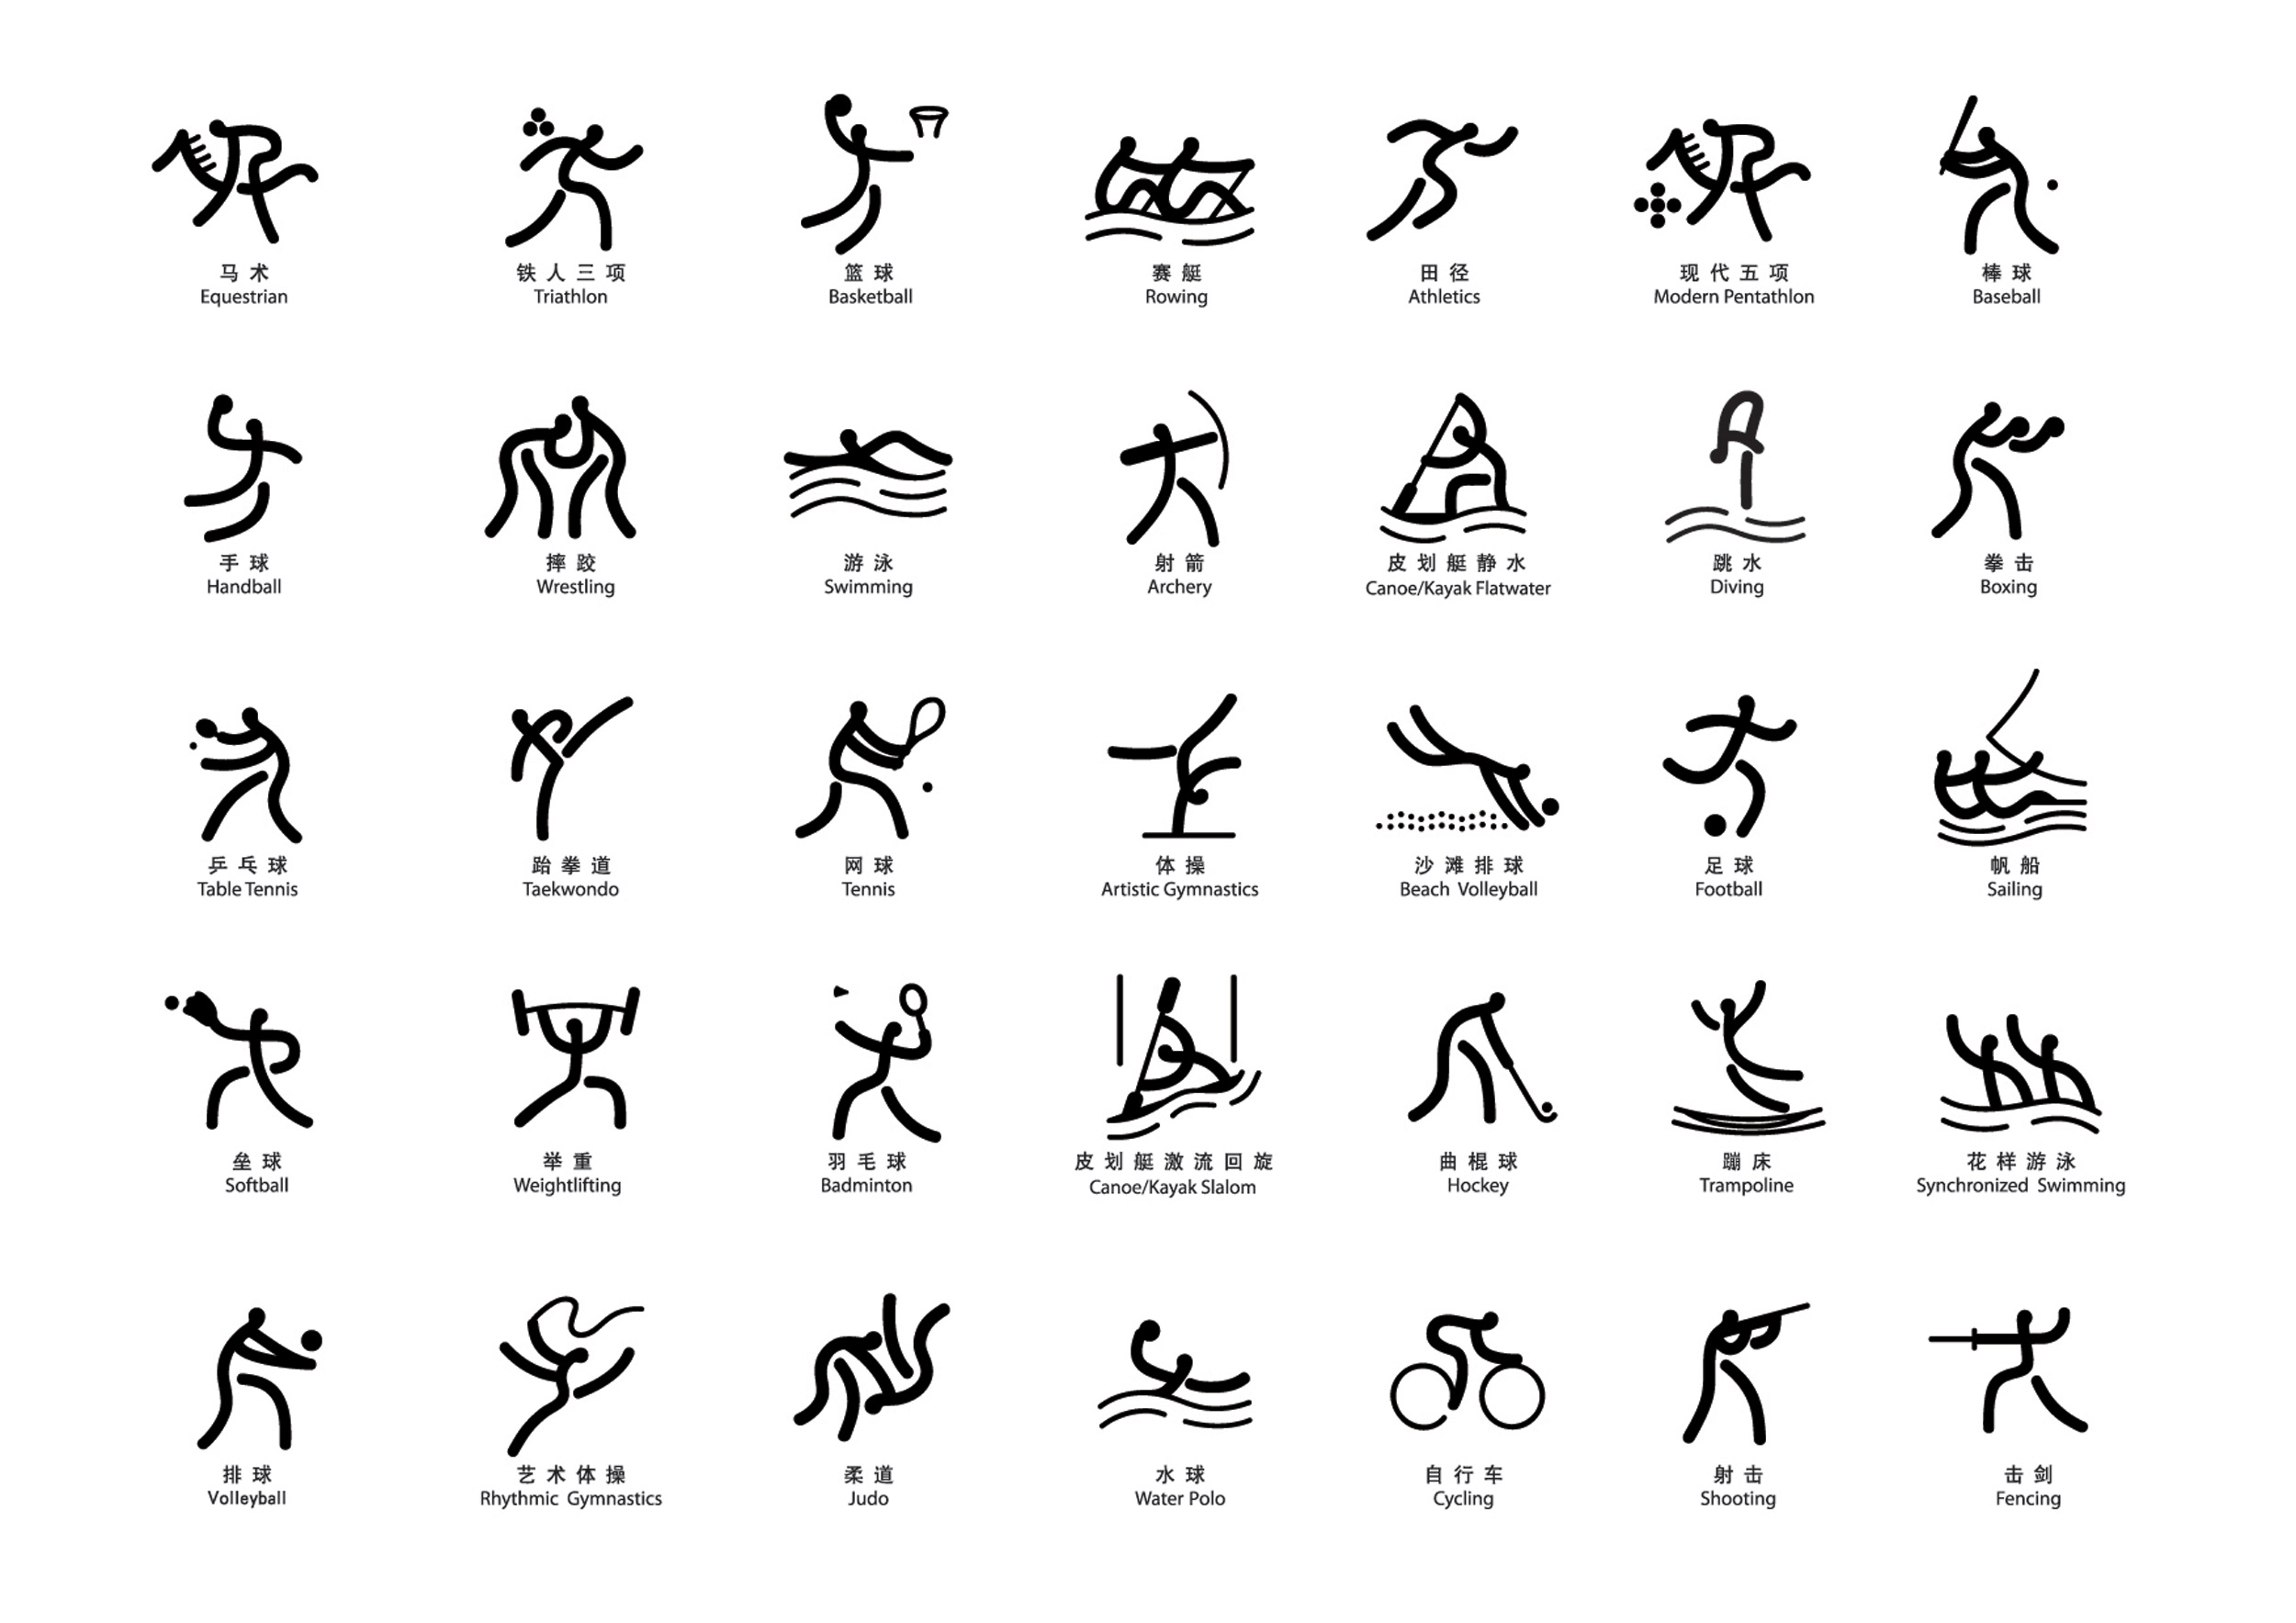 2008年北京奧運會圖示(2008年奧運會體育圖示)